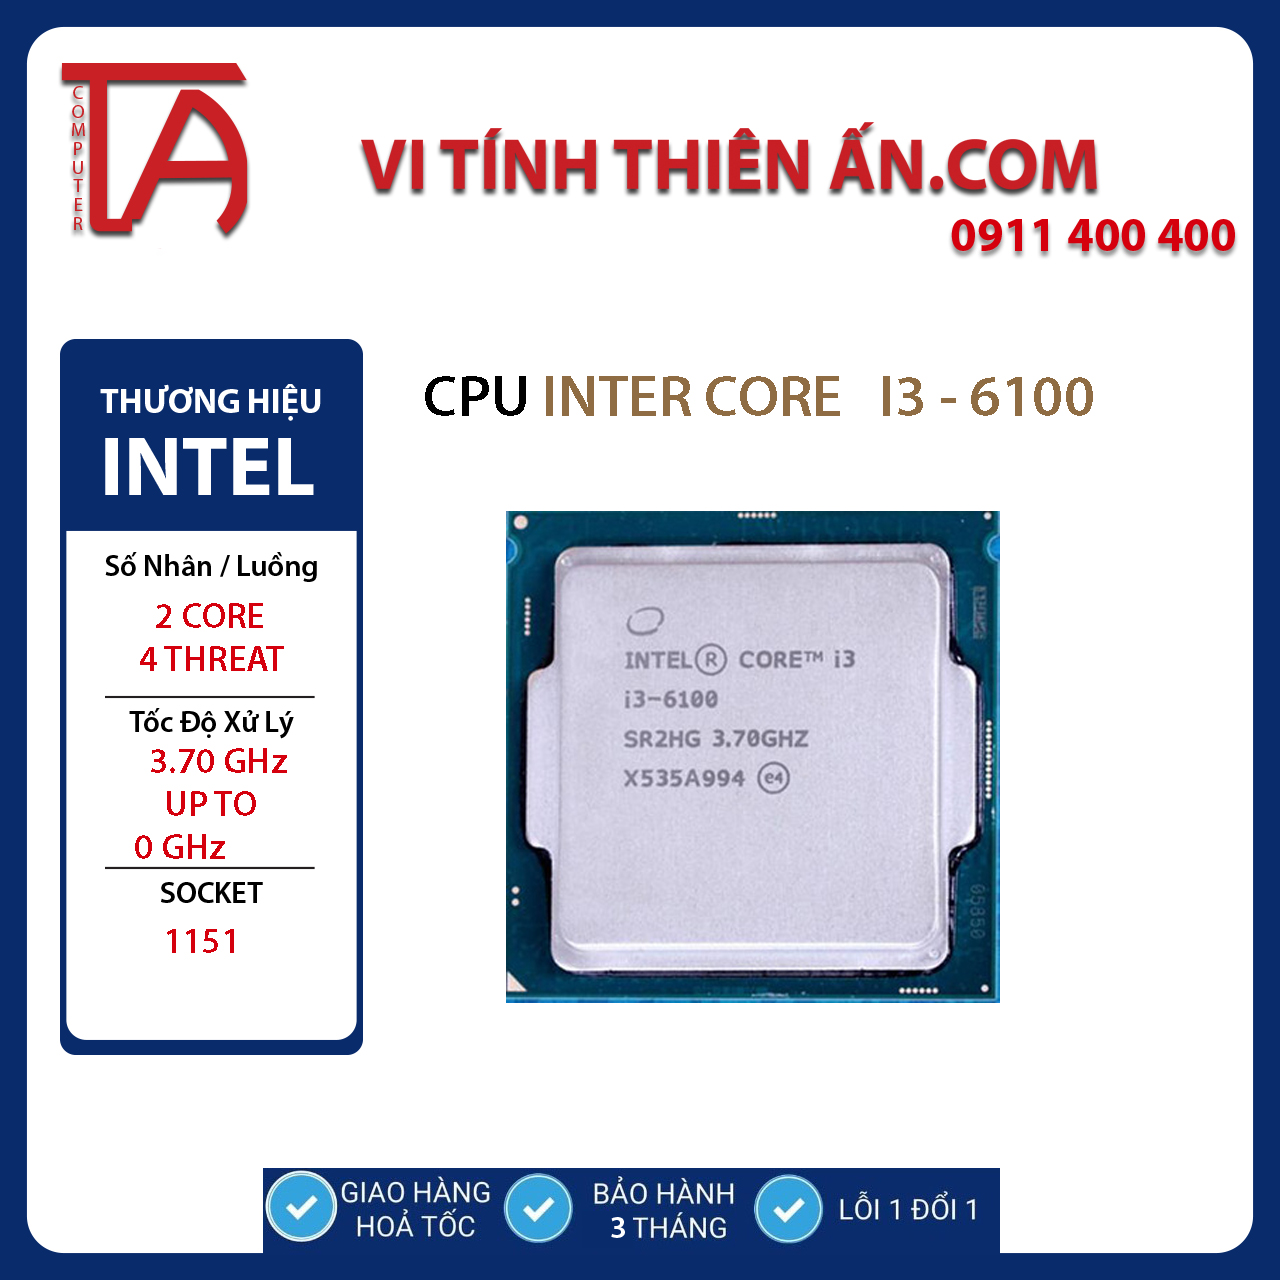 I3-9100F (3.60GHz / 6M / sk1151v2) - không GPU